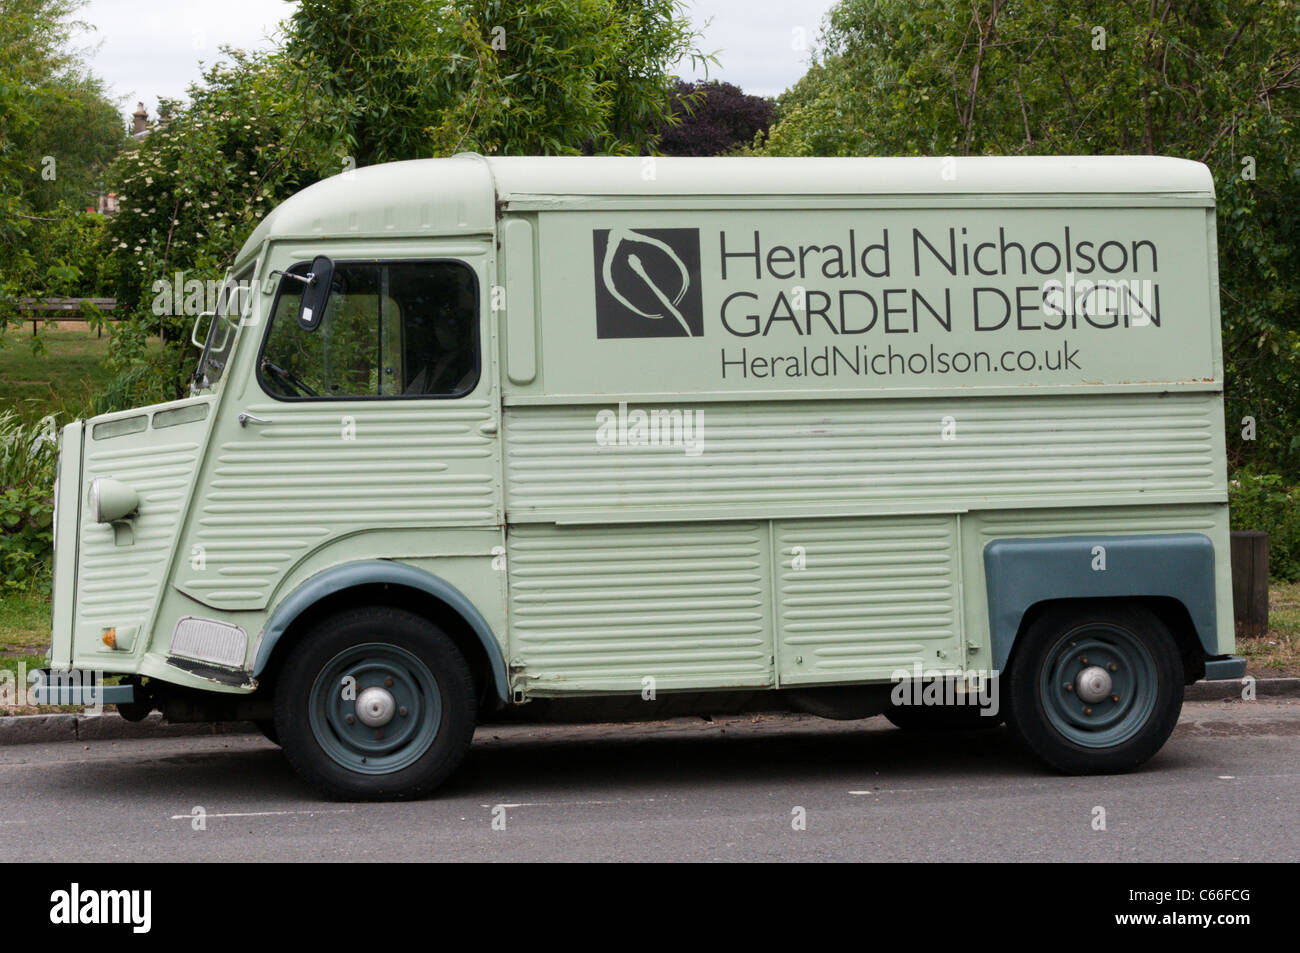 Une Citroën Type H Van utilisé par garden design partnership Herald Nicholson, stationné dans le sud de Londres. Banque D'Images